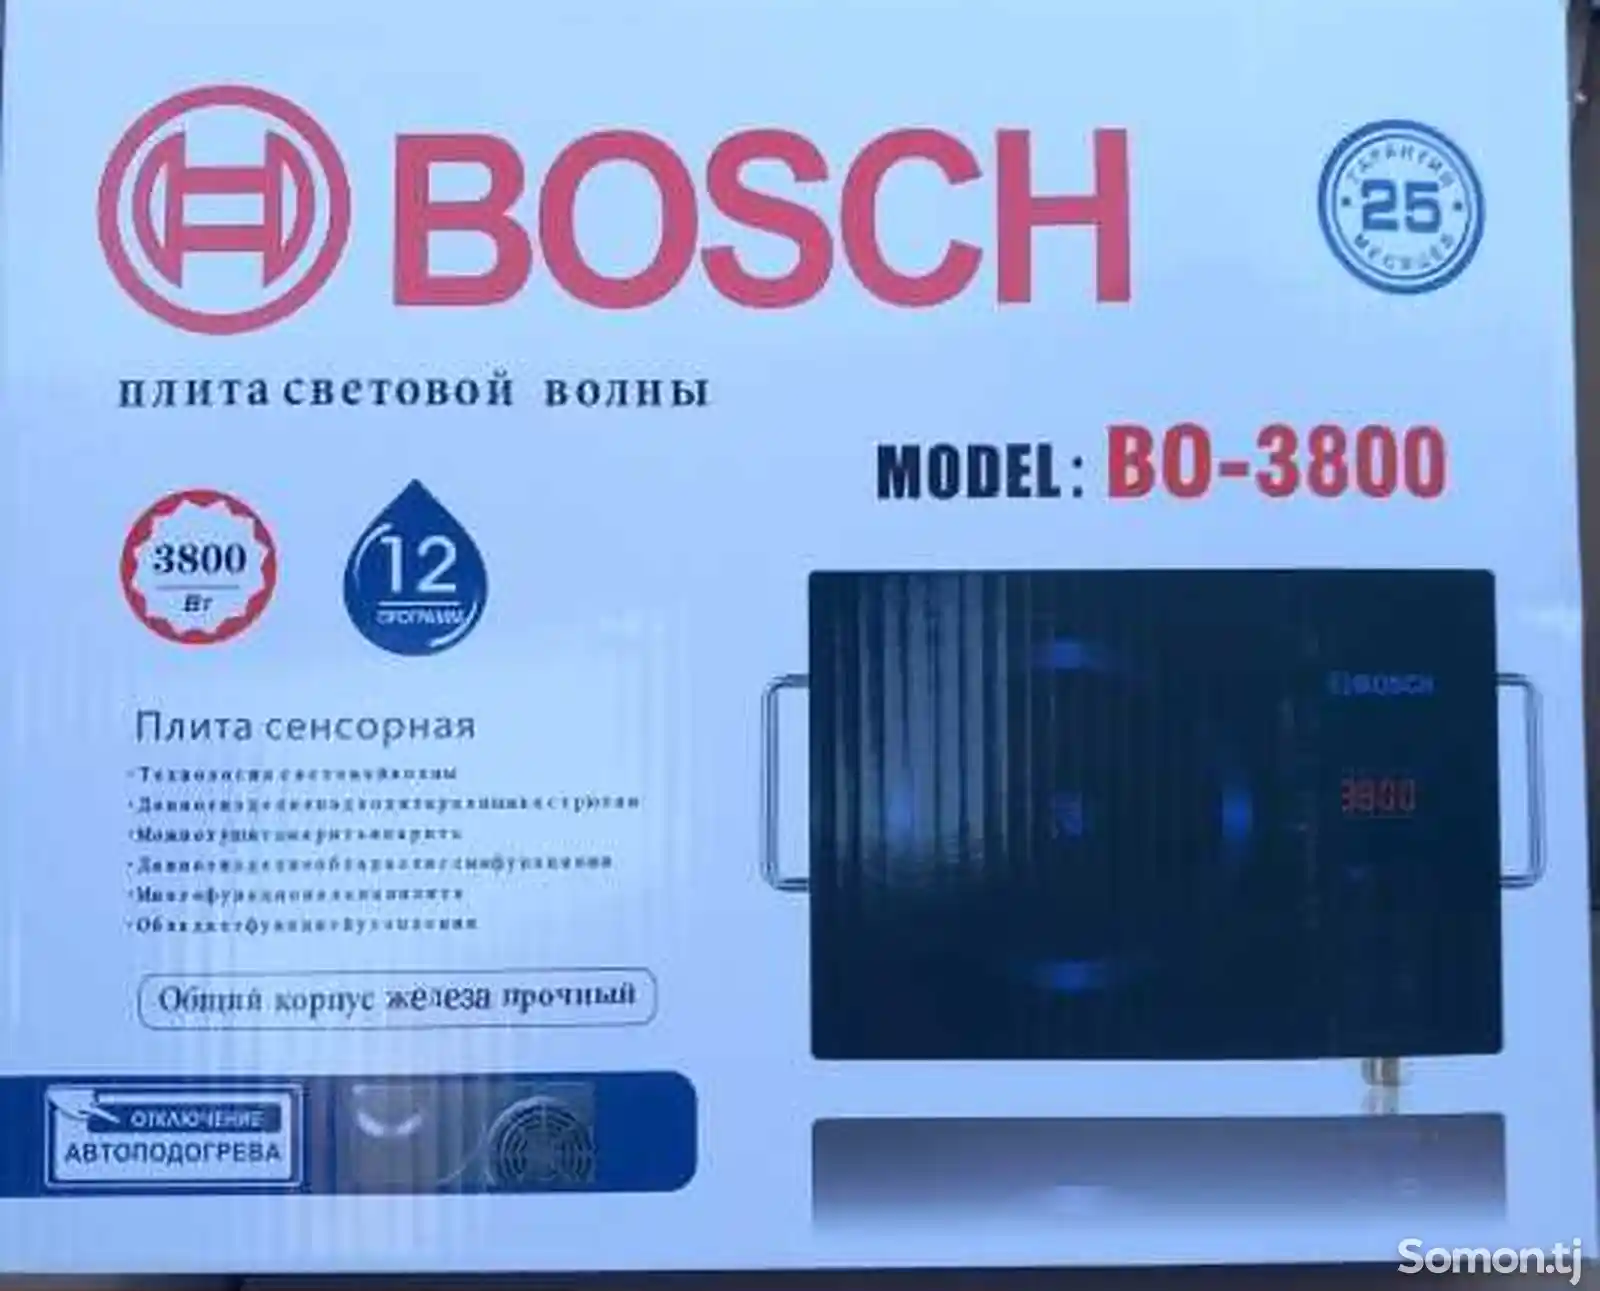 Плита сенсорная Bosch model 3800-1